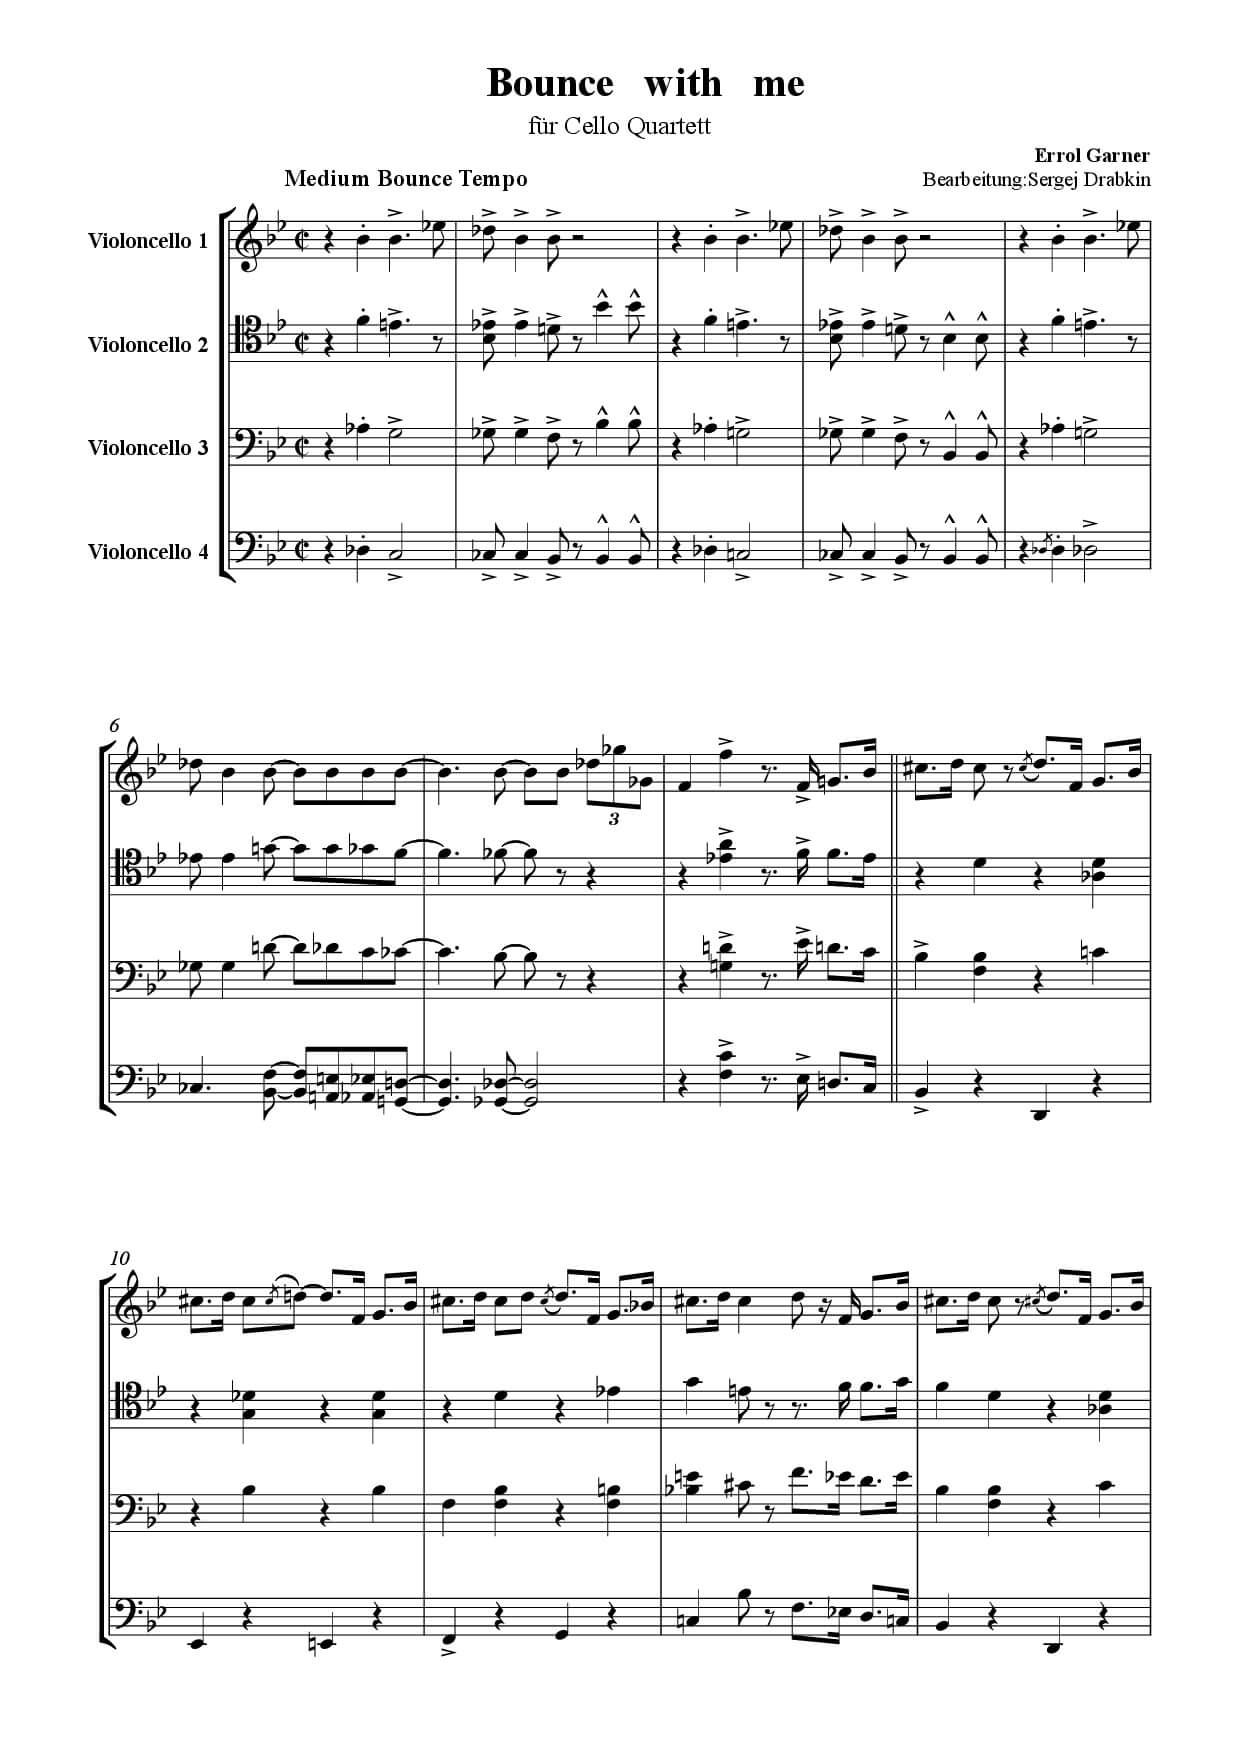 Musiknoten für Cello Quartett aus dem Stück Bounce with me von Garner, Erroll